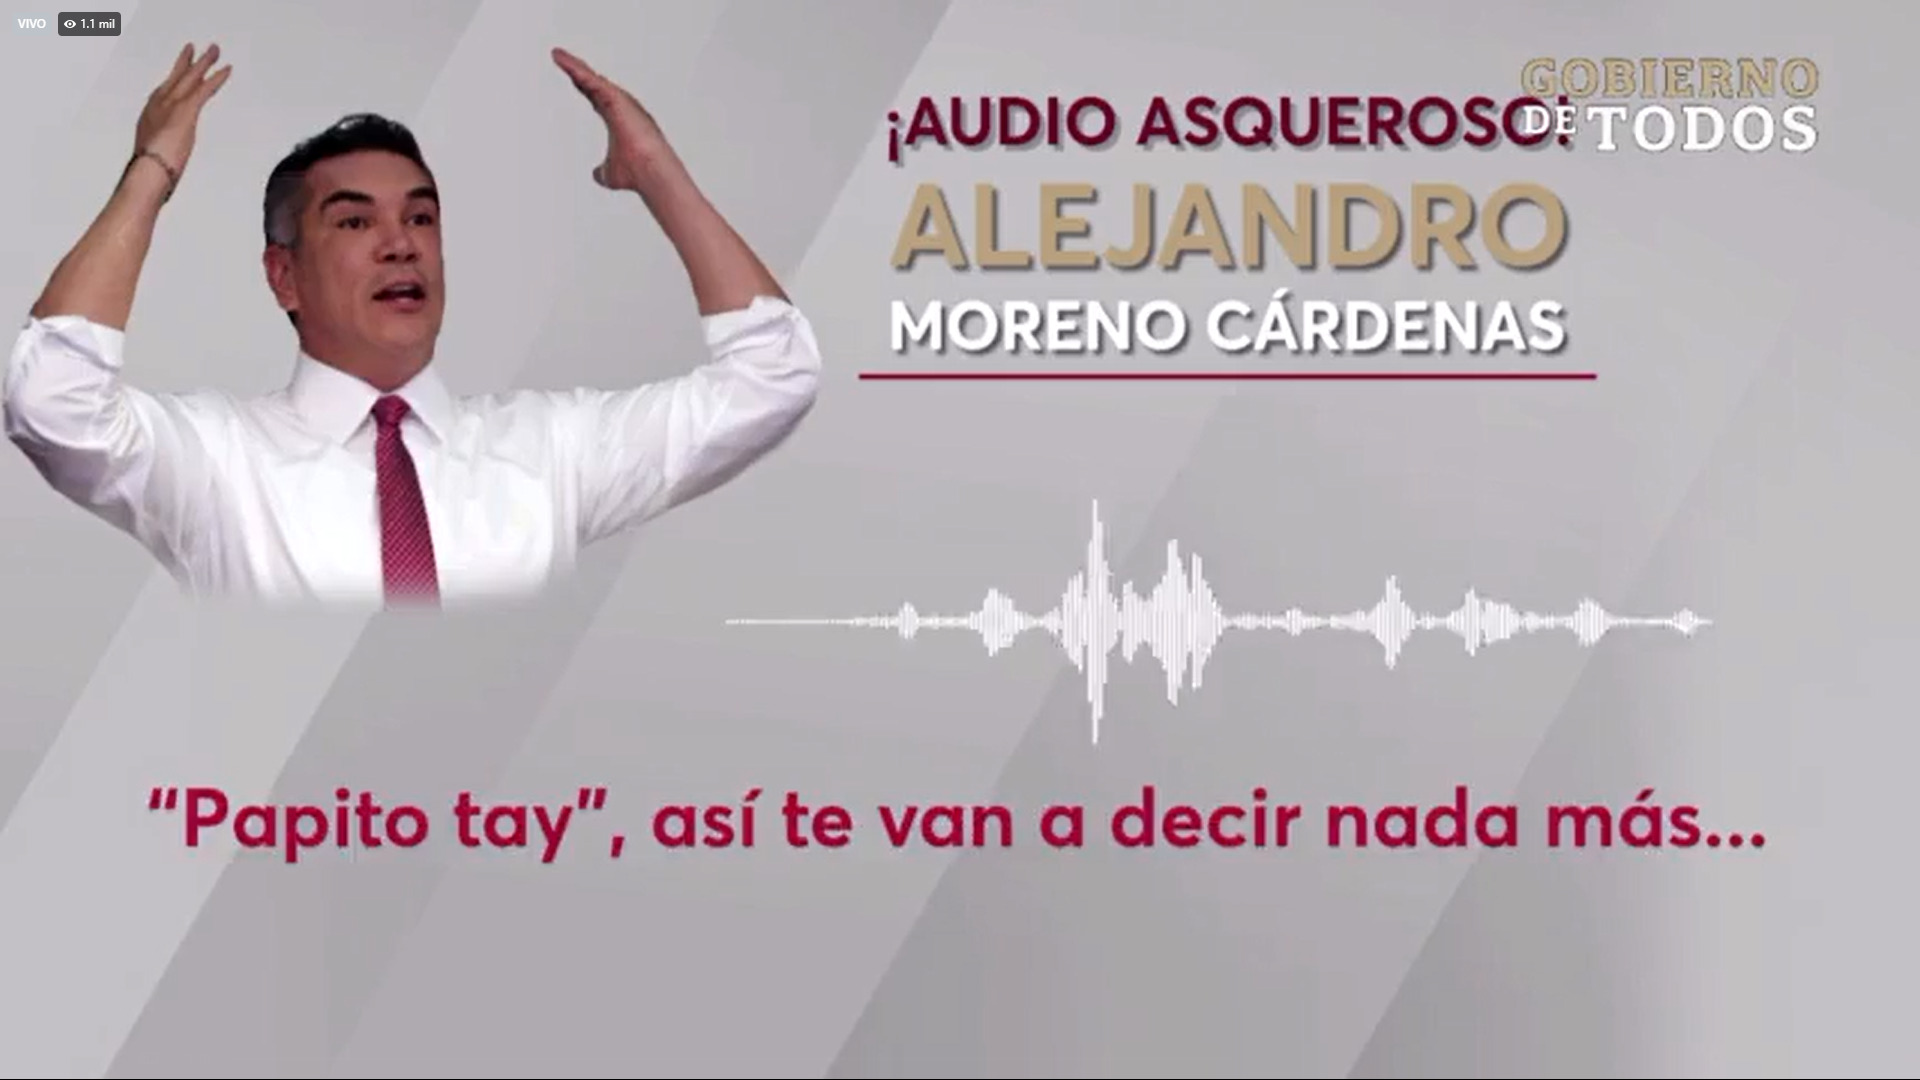 Nuevo audio filtrado de Alejandro Moreno exhibe supuesta relación con medios